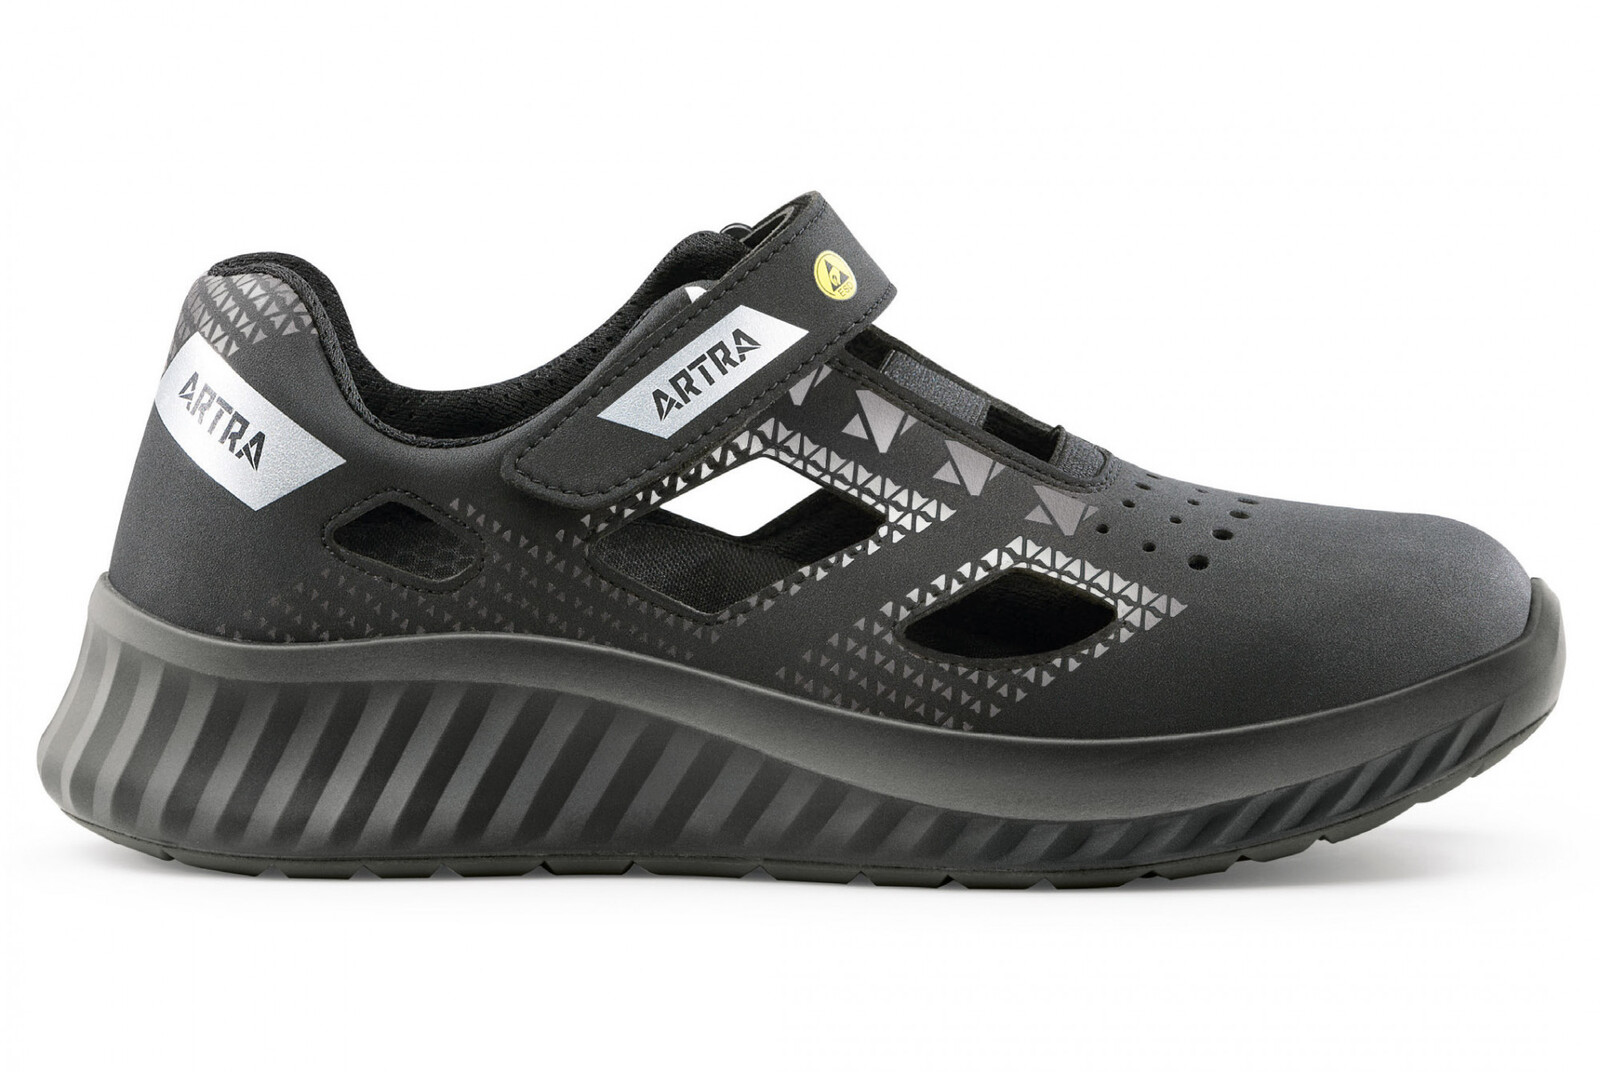 Bezpečnostné sandále Artra Arso 701 616560 S1 SRC ESD - veľkosť: 43, farba: čierna/sivá